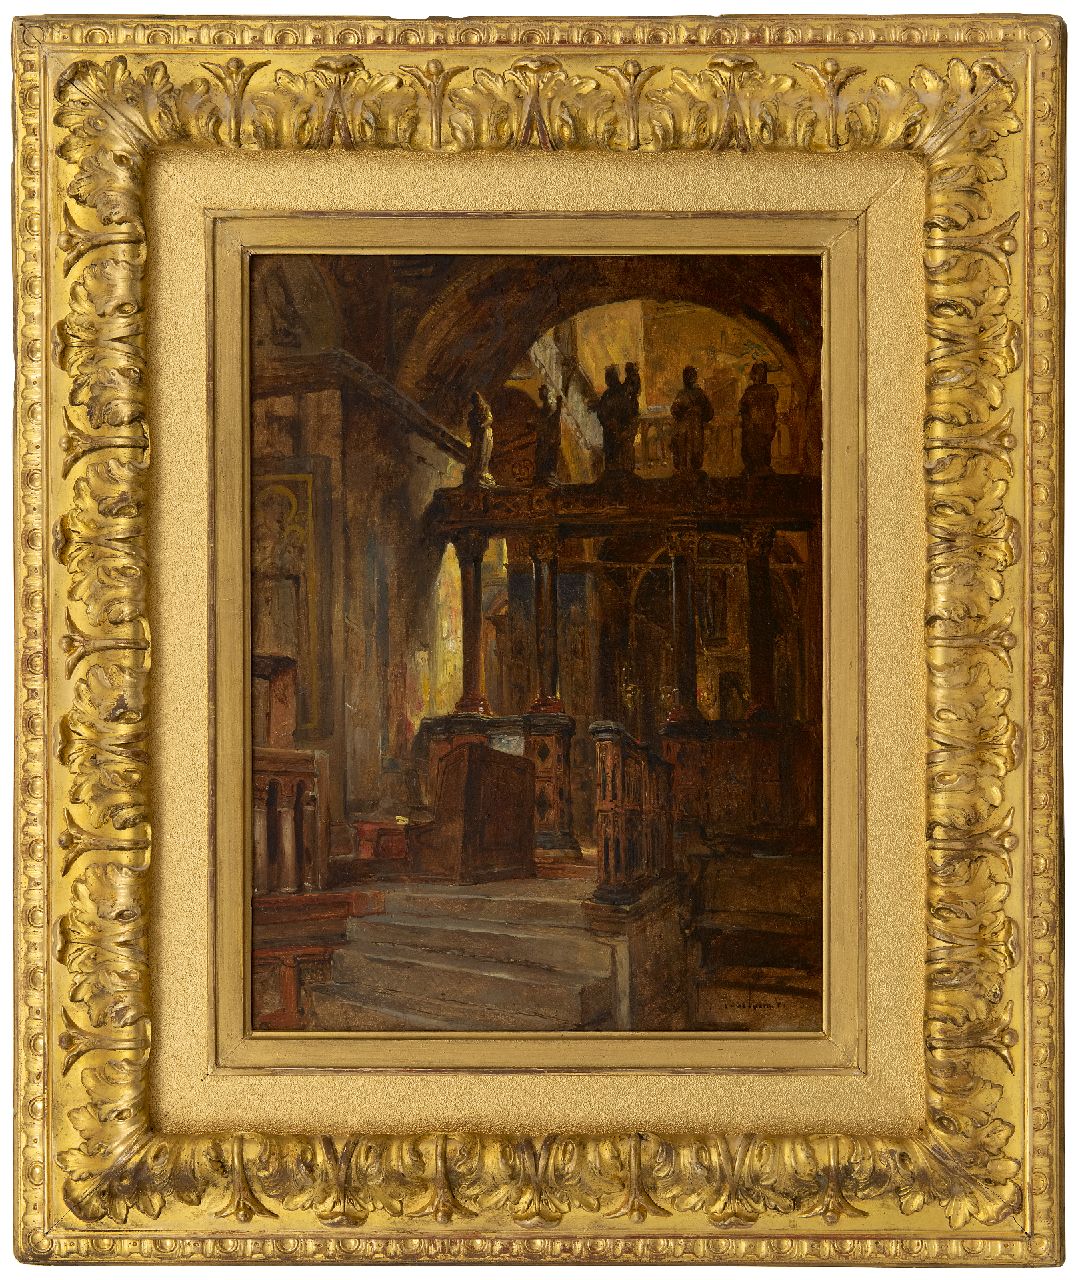 Bosboom J.  | Johannes Bosboom | Schilderijen te koop aangeboden | Interieur van een Oosters-Orthodoxe kerk  i.o., olieverf op paneel 41,9 x 31,4 cm, gesigneerd rechtsonder